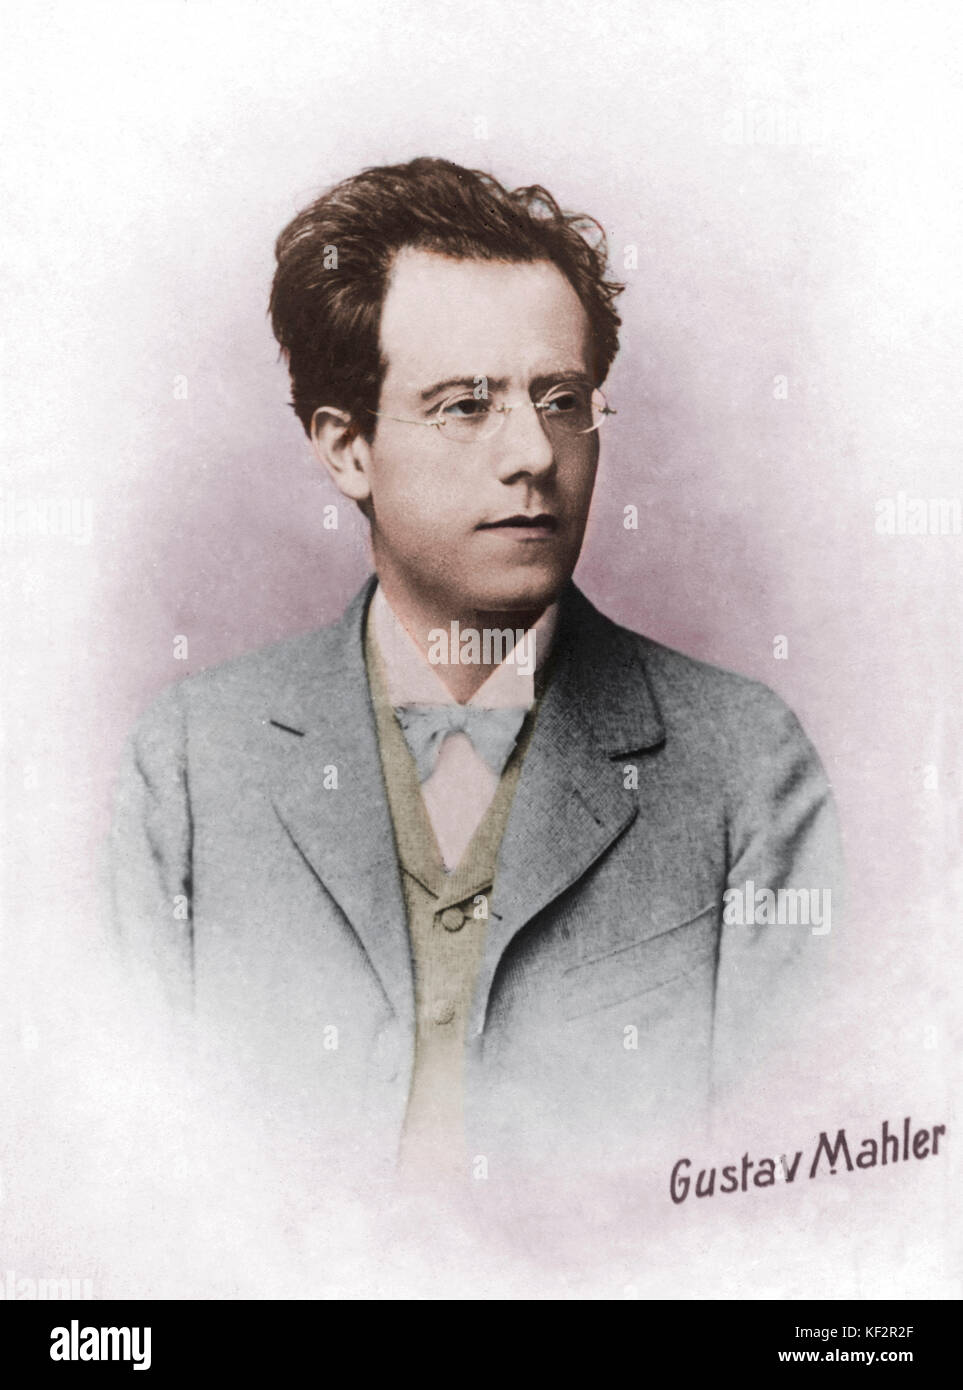 Gustav Mahler portrait österreichische Komponist, 1860-1911. Eingefärbte Version. Stockfoto